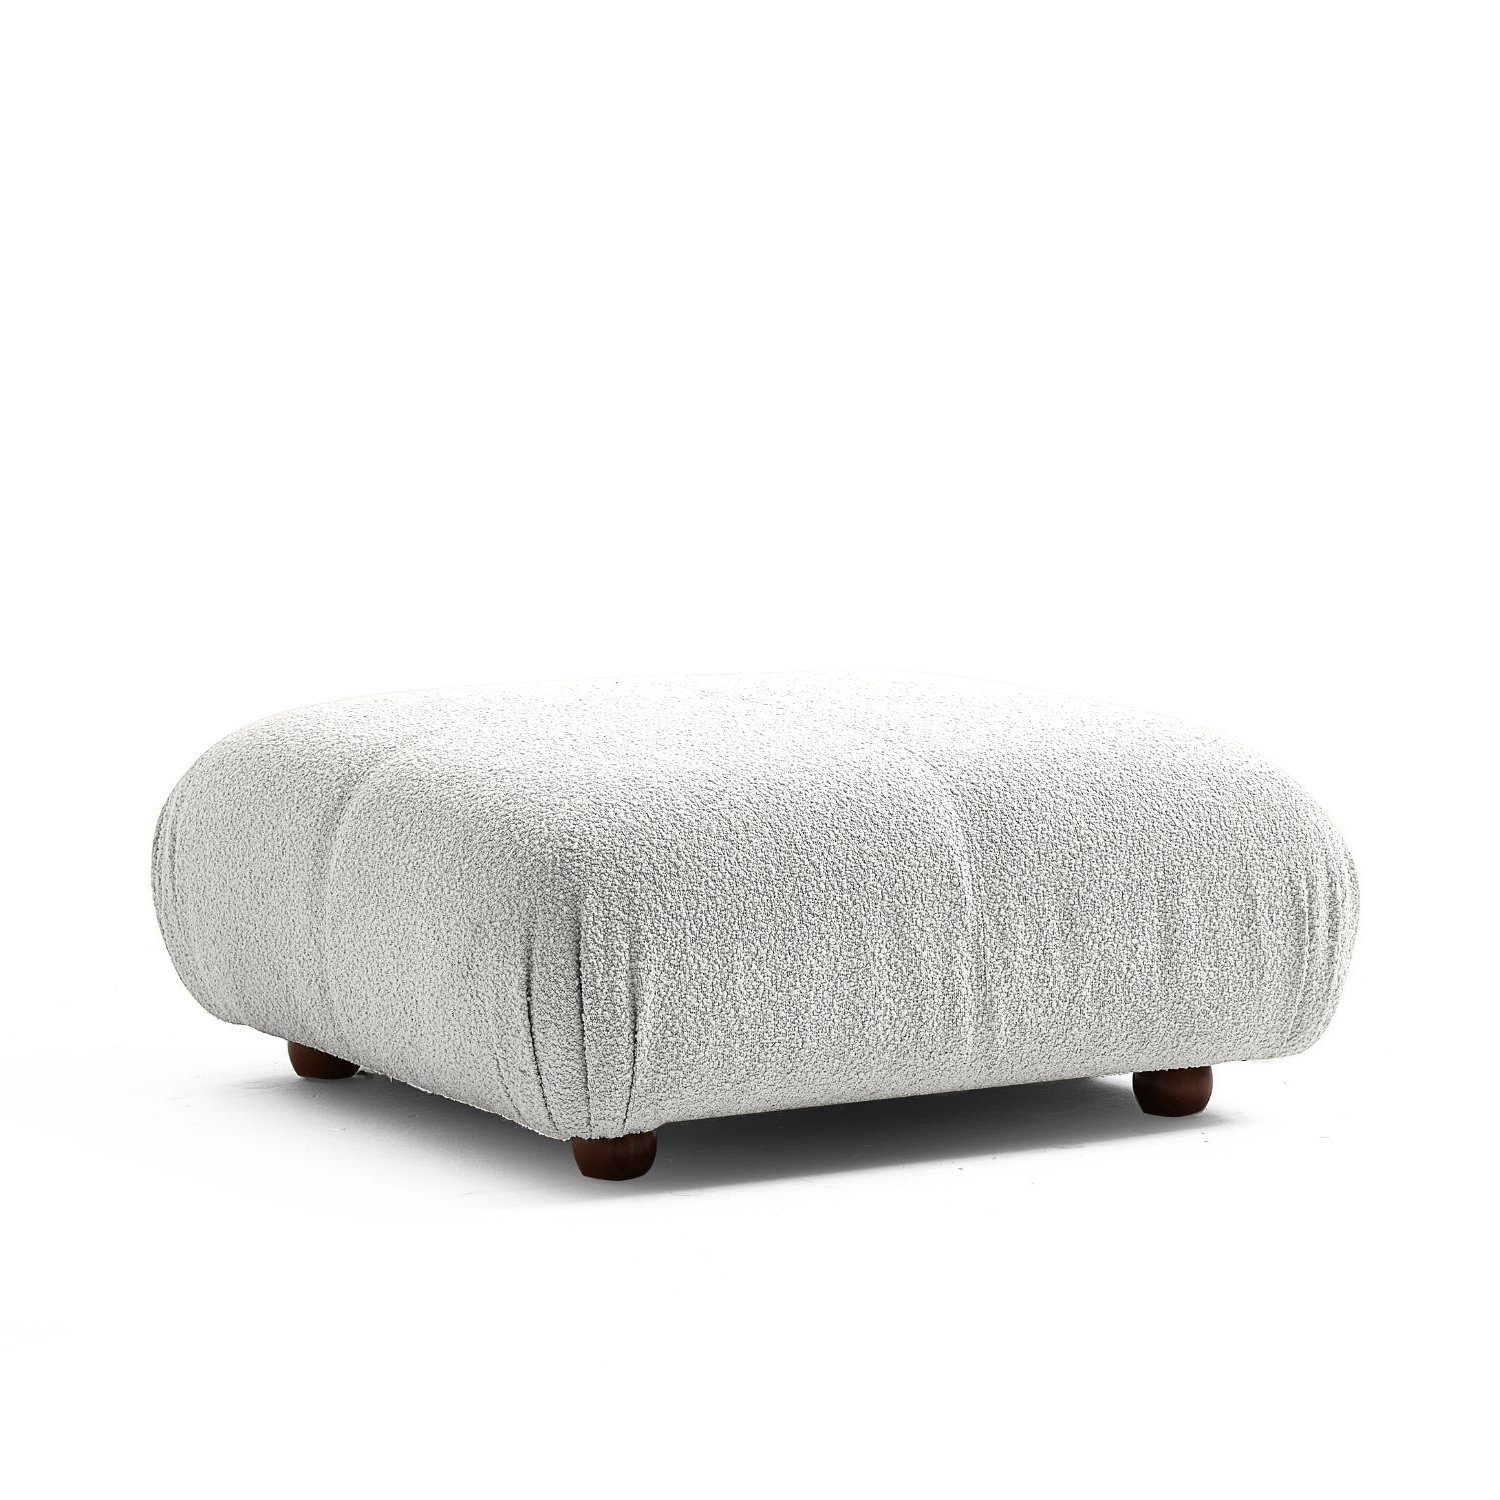 Touch me Sofa Knuffiges Sitzmöbel neueste Generation aus Komfortschaum Grau Beige-Lieferung und Aufbau im Preis enthalten!